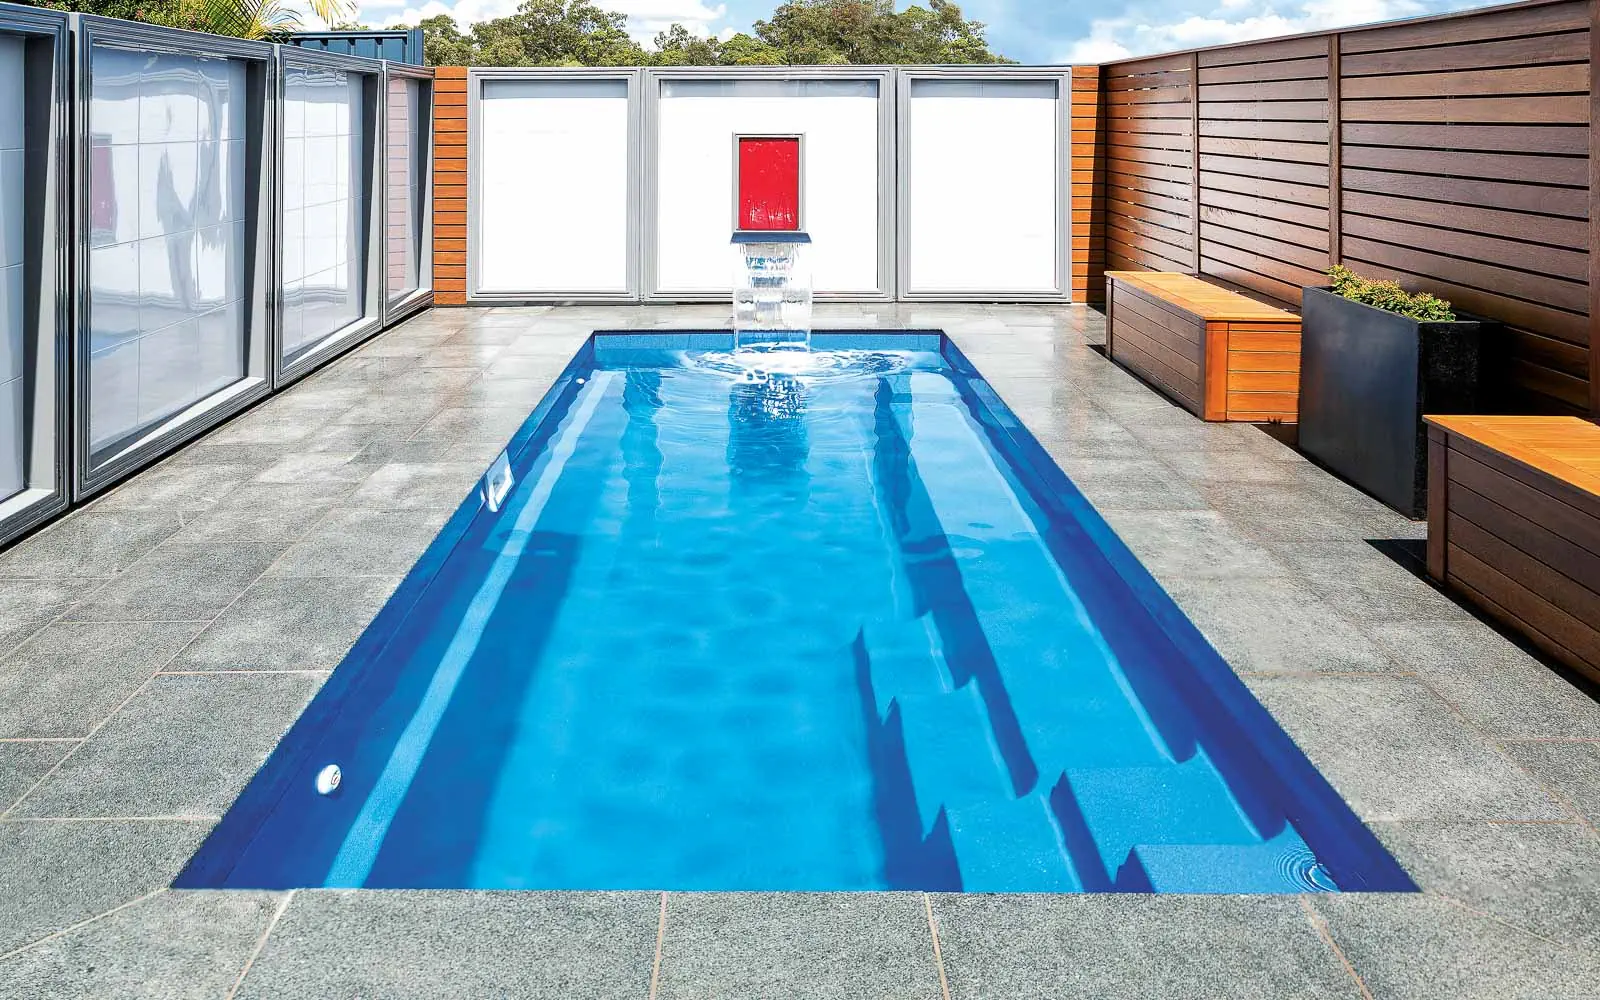 Leisure Pools Esprit fibreglass swimming pool design